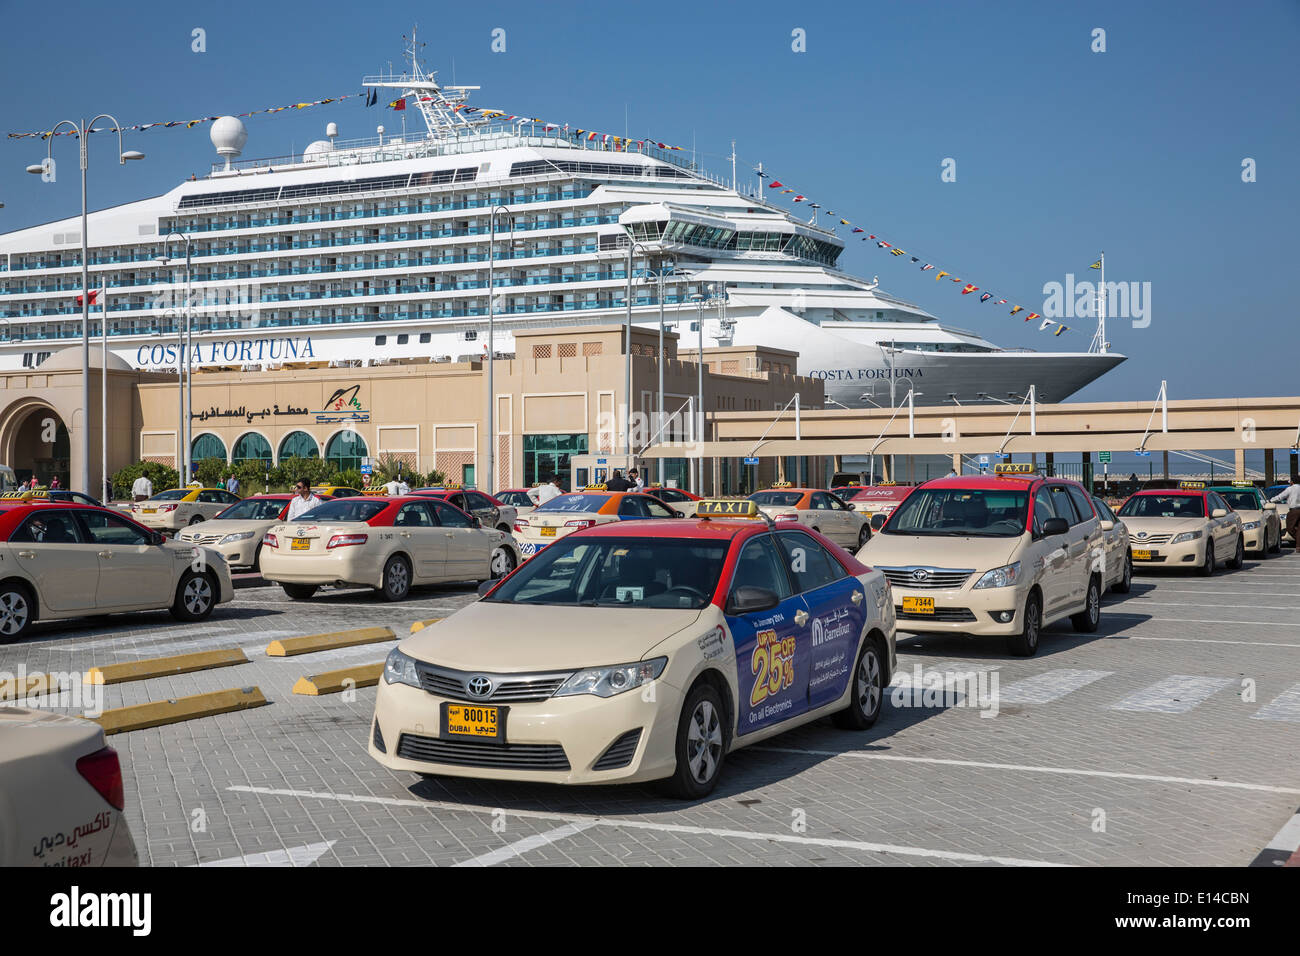 Vereinigte Arabische Emirate, Dubai, Kreuzfahrtschiff Costa Fortuna, Unternehmen aus Italien, vertäut im Hafen. Taxi-stand Stockfoto